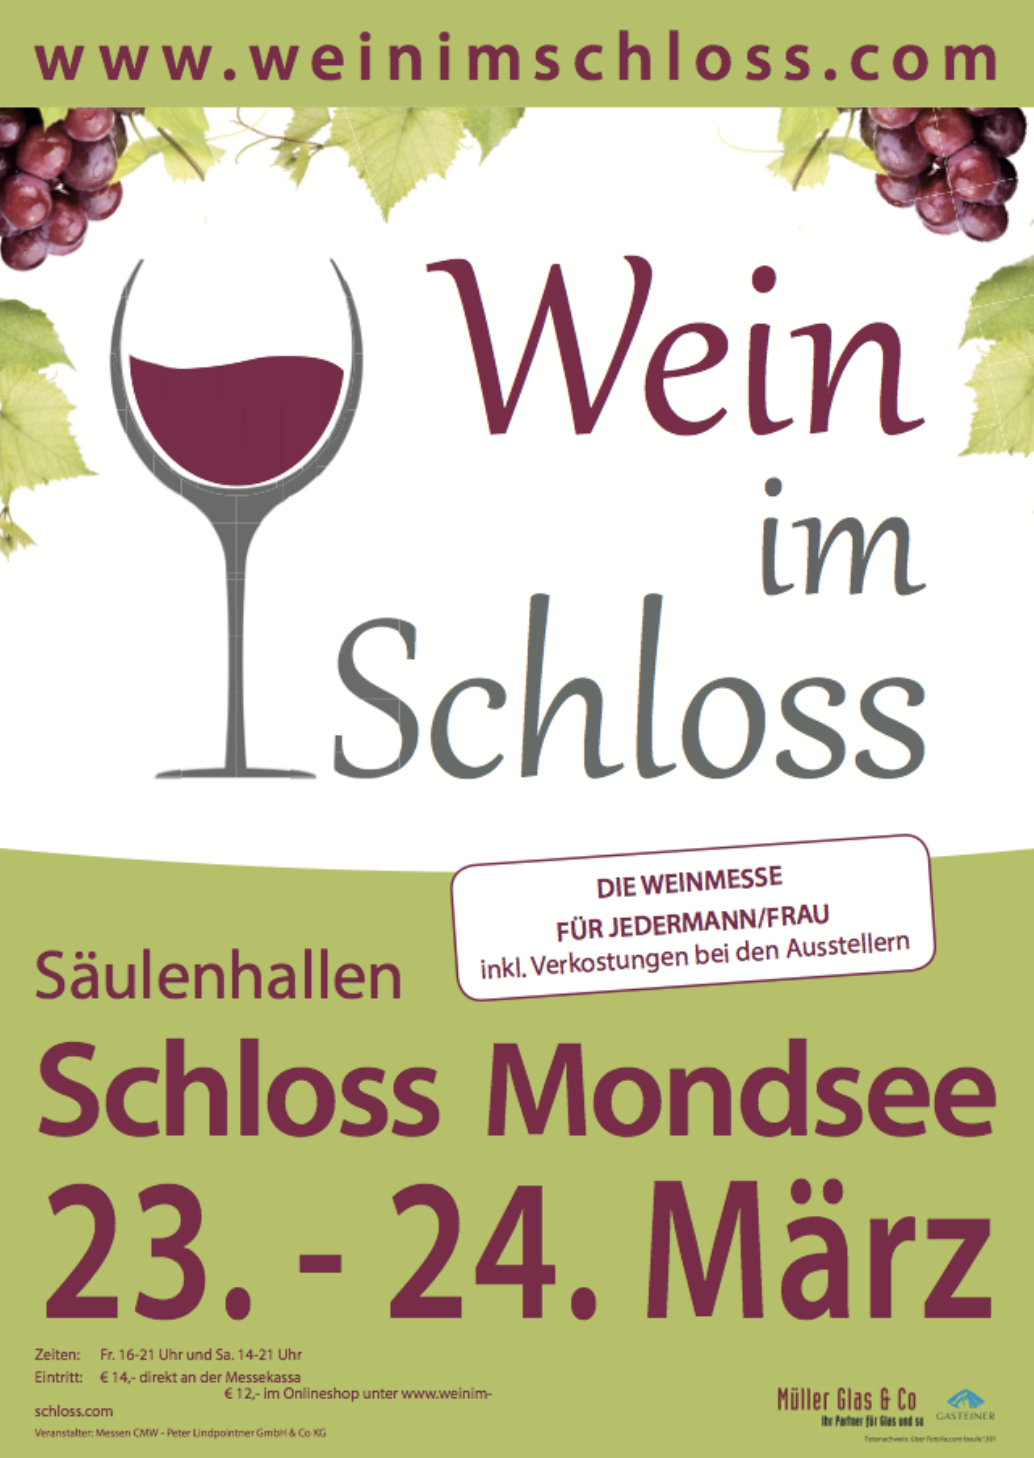 Weinmesse Mondsee 2018